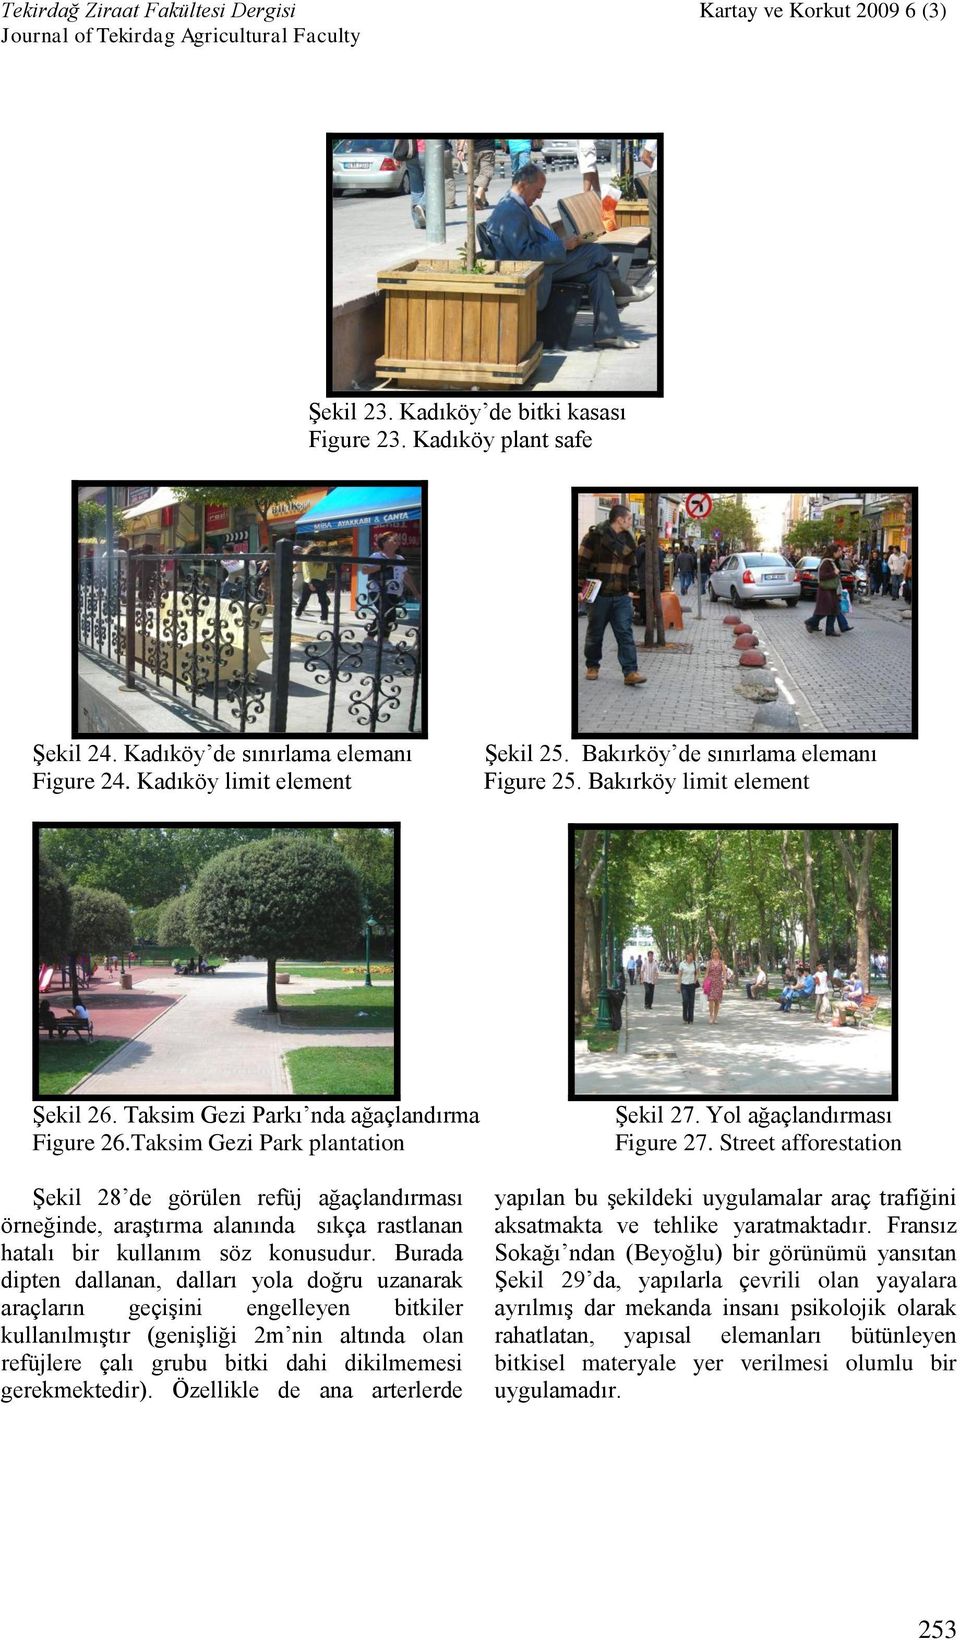 Taksim Gezi Park plantation Şekil 28 de görülen refüj ağaçlandırması örneğinde, araştırma alanında sıkça rastlanan hatalı bir kullanım söz konusudur.